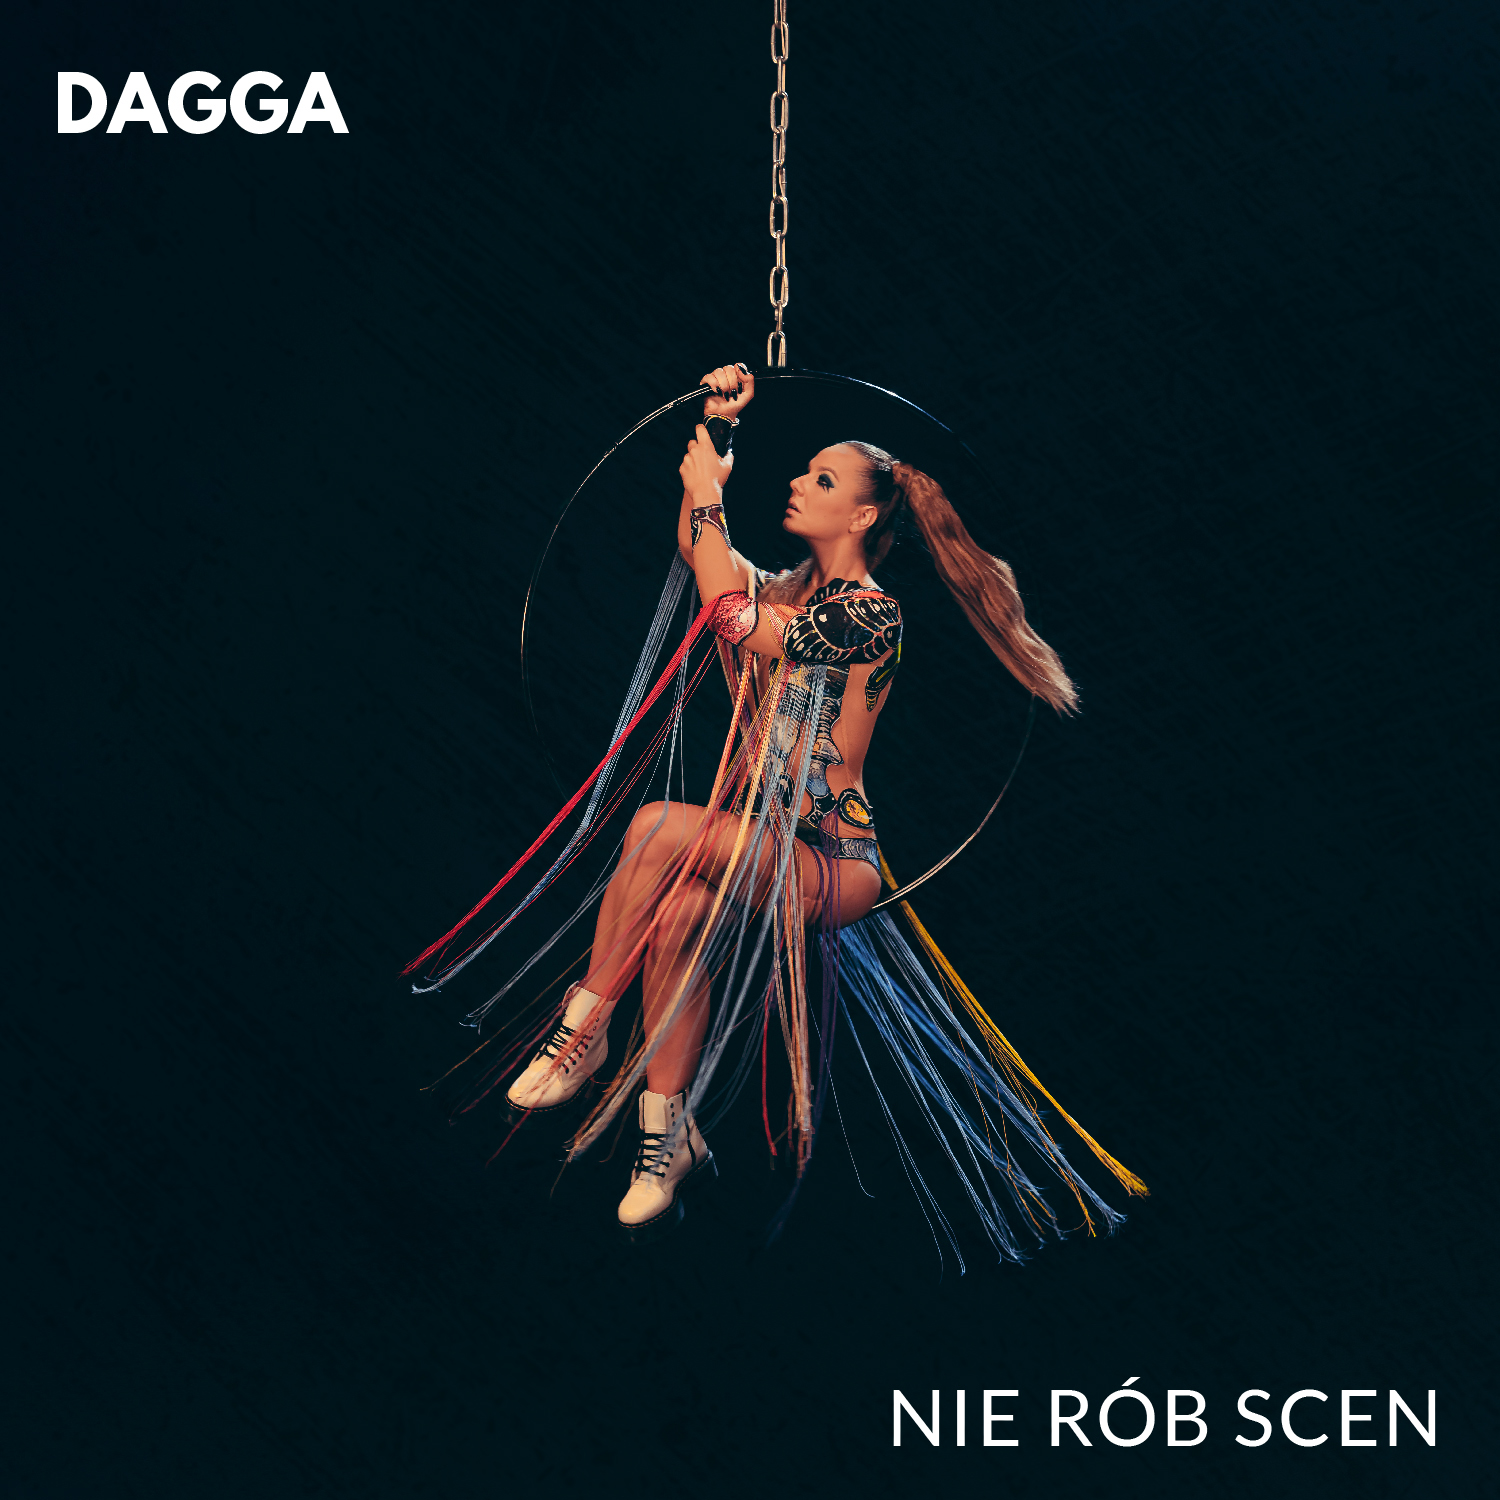 Dagga - Nie rób scen [okładka]